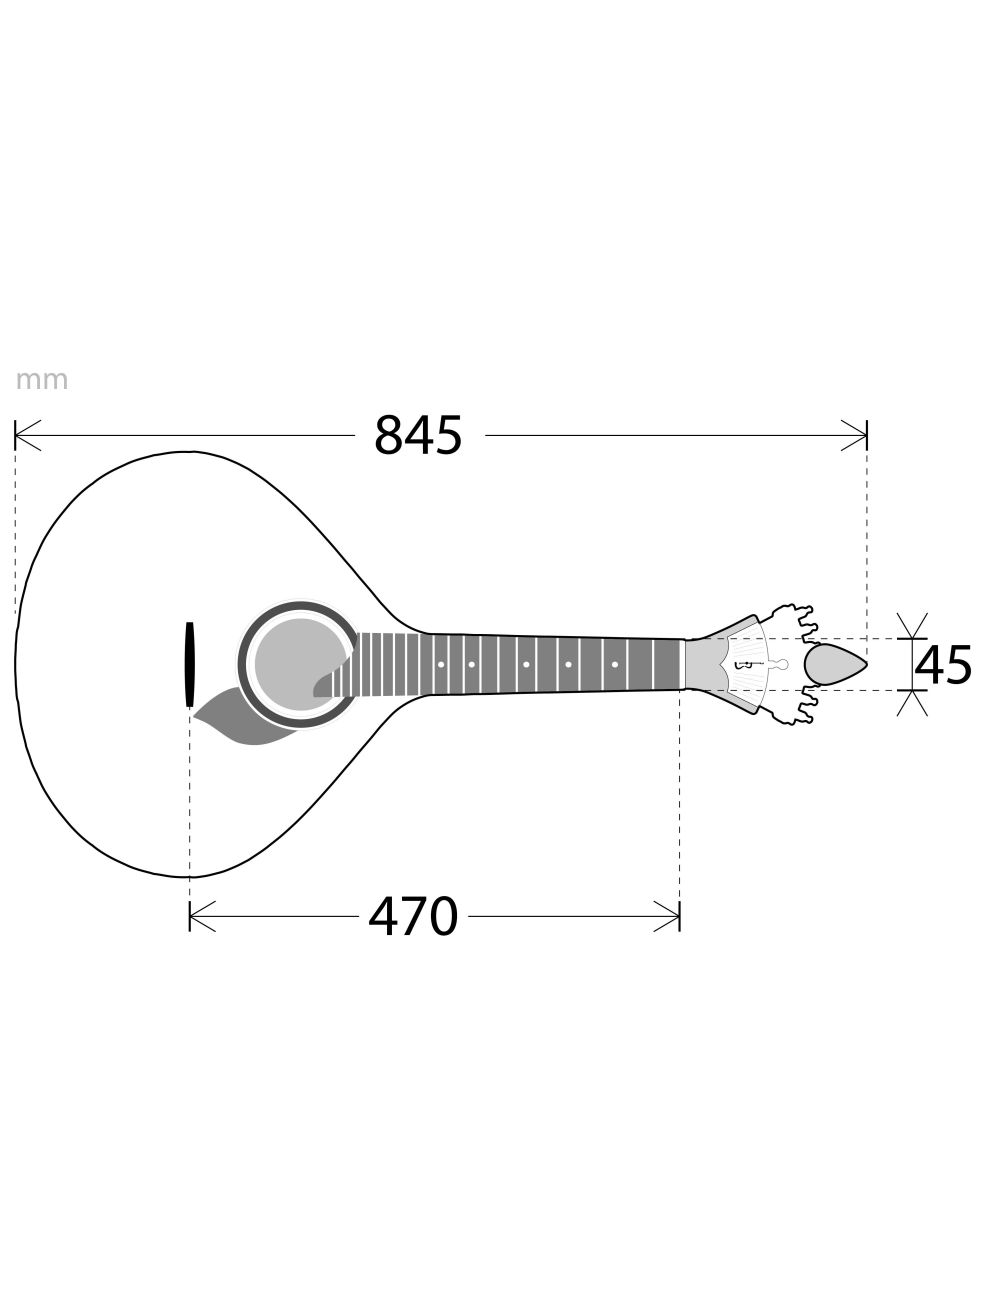 APC 305-LS Guitarra portuguesa